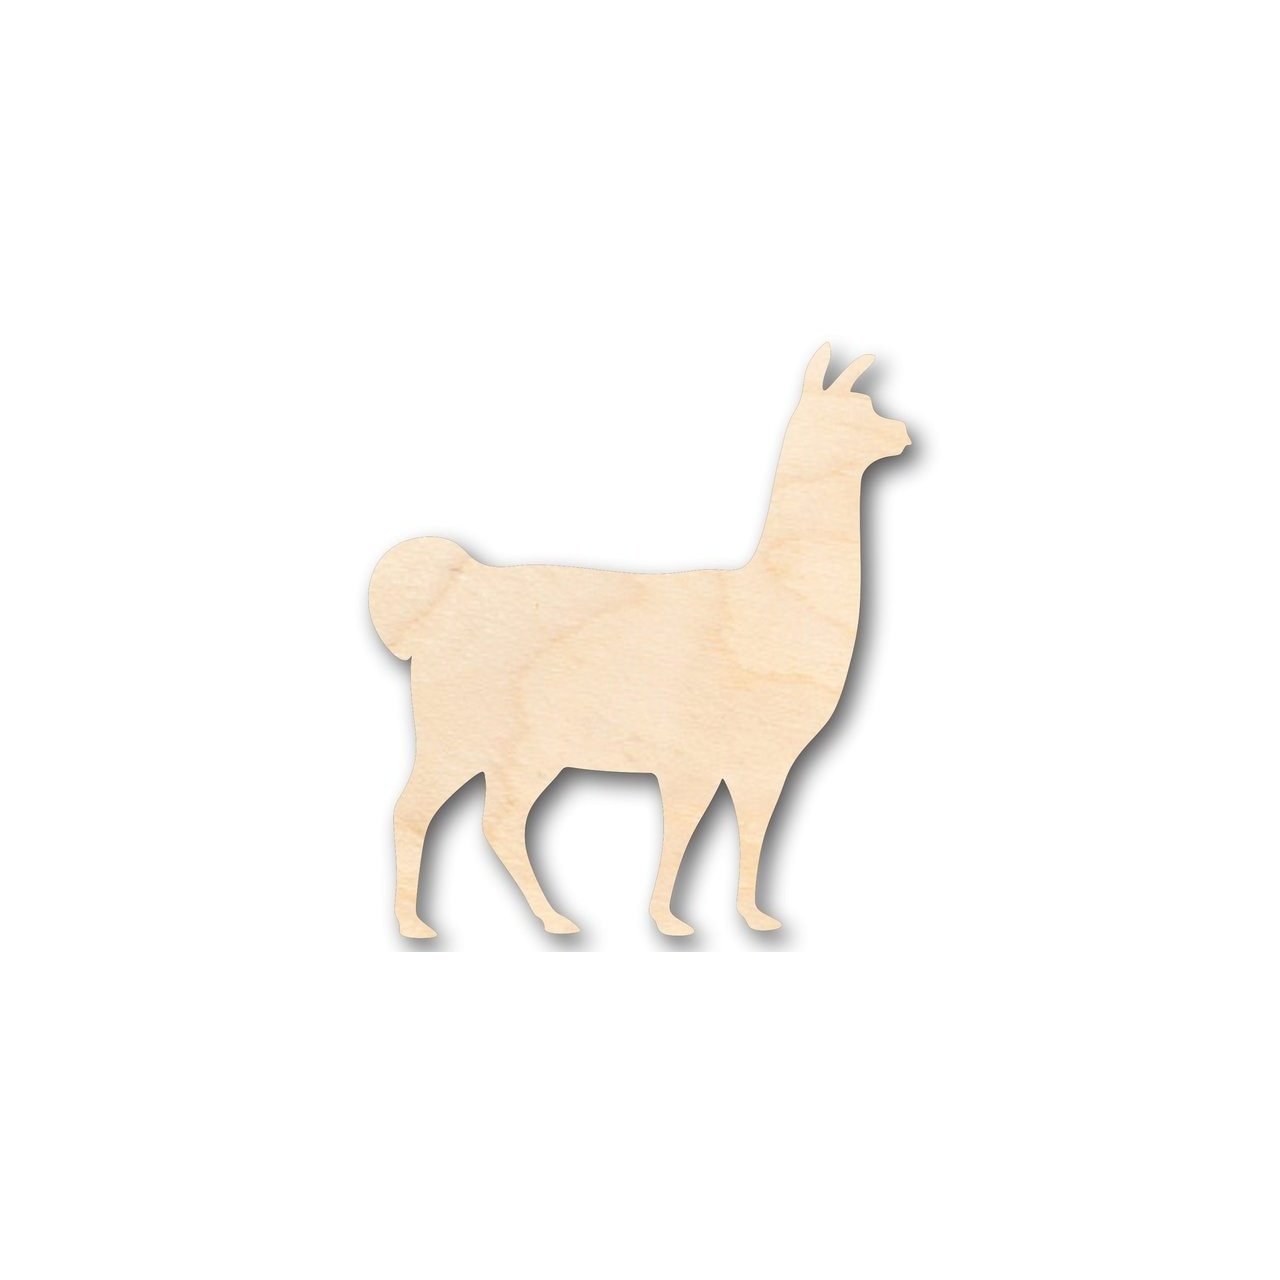 Unfinished Wooden Llama Shape - Farm Animal - Craft - up to 24